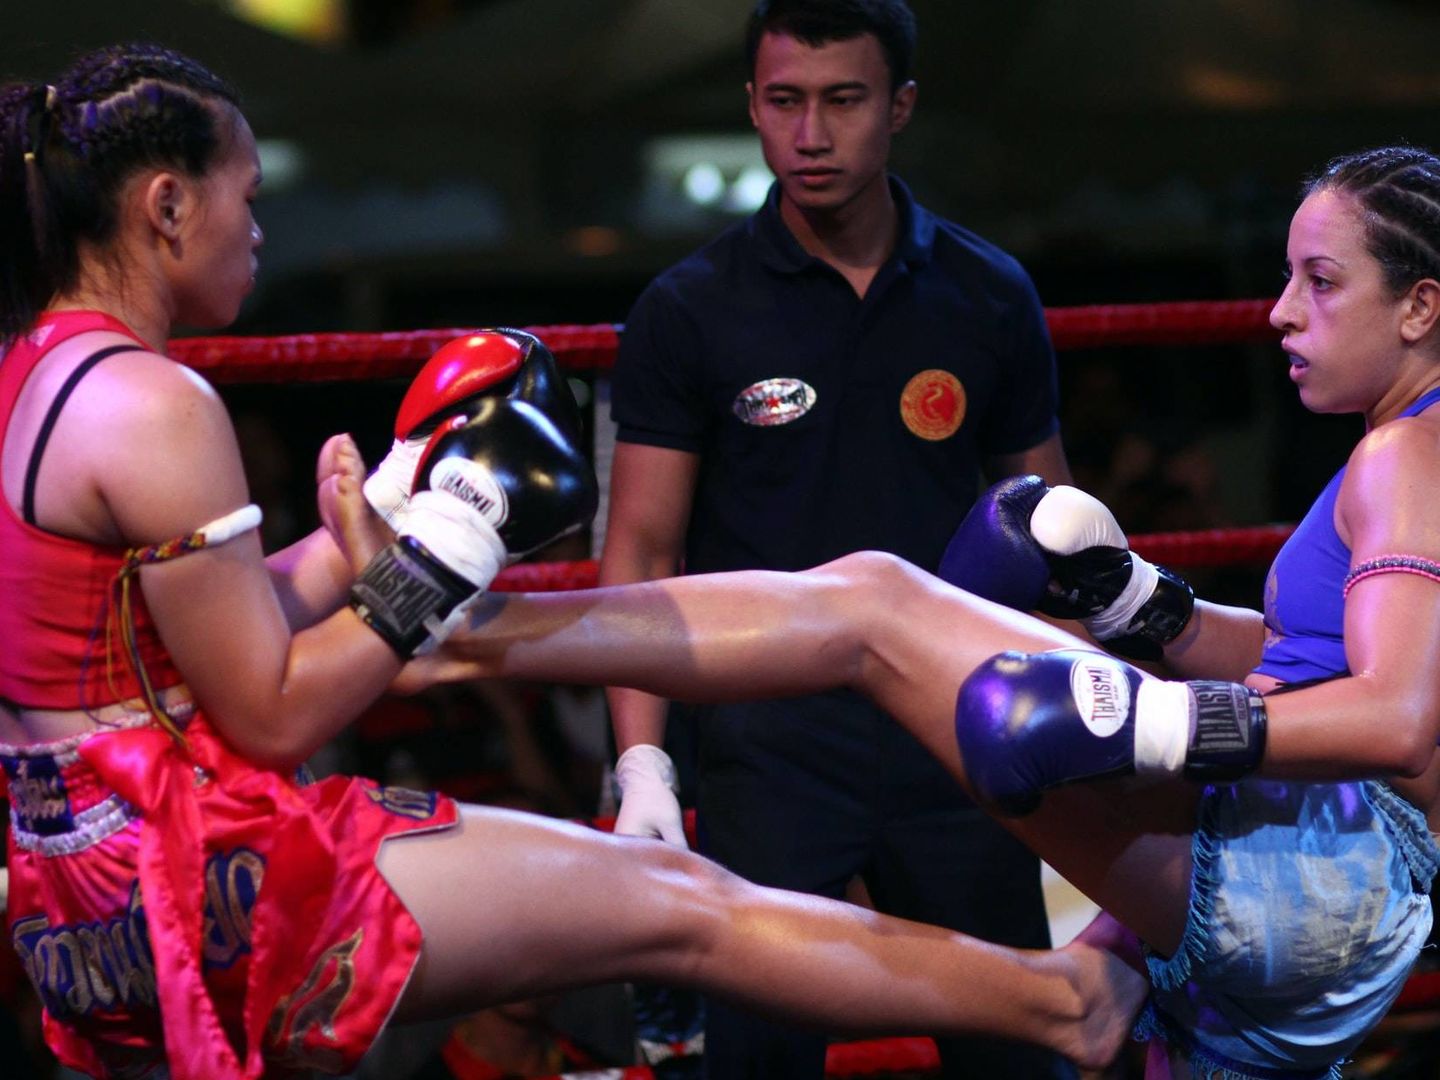 El muay thai combina boxeo y artes marciales, y fue clave para la transformación de su cuerpo (Unsplash)